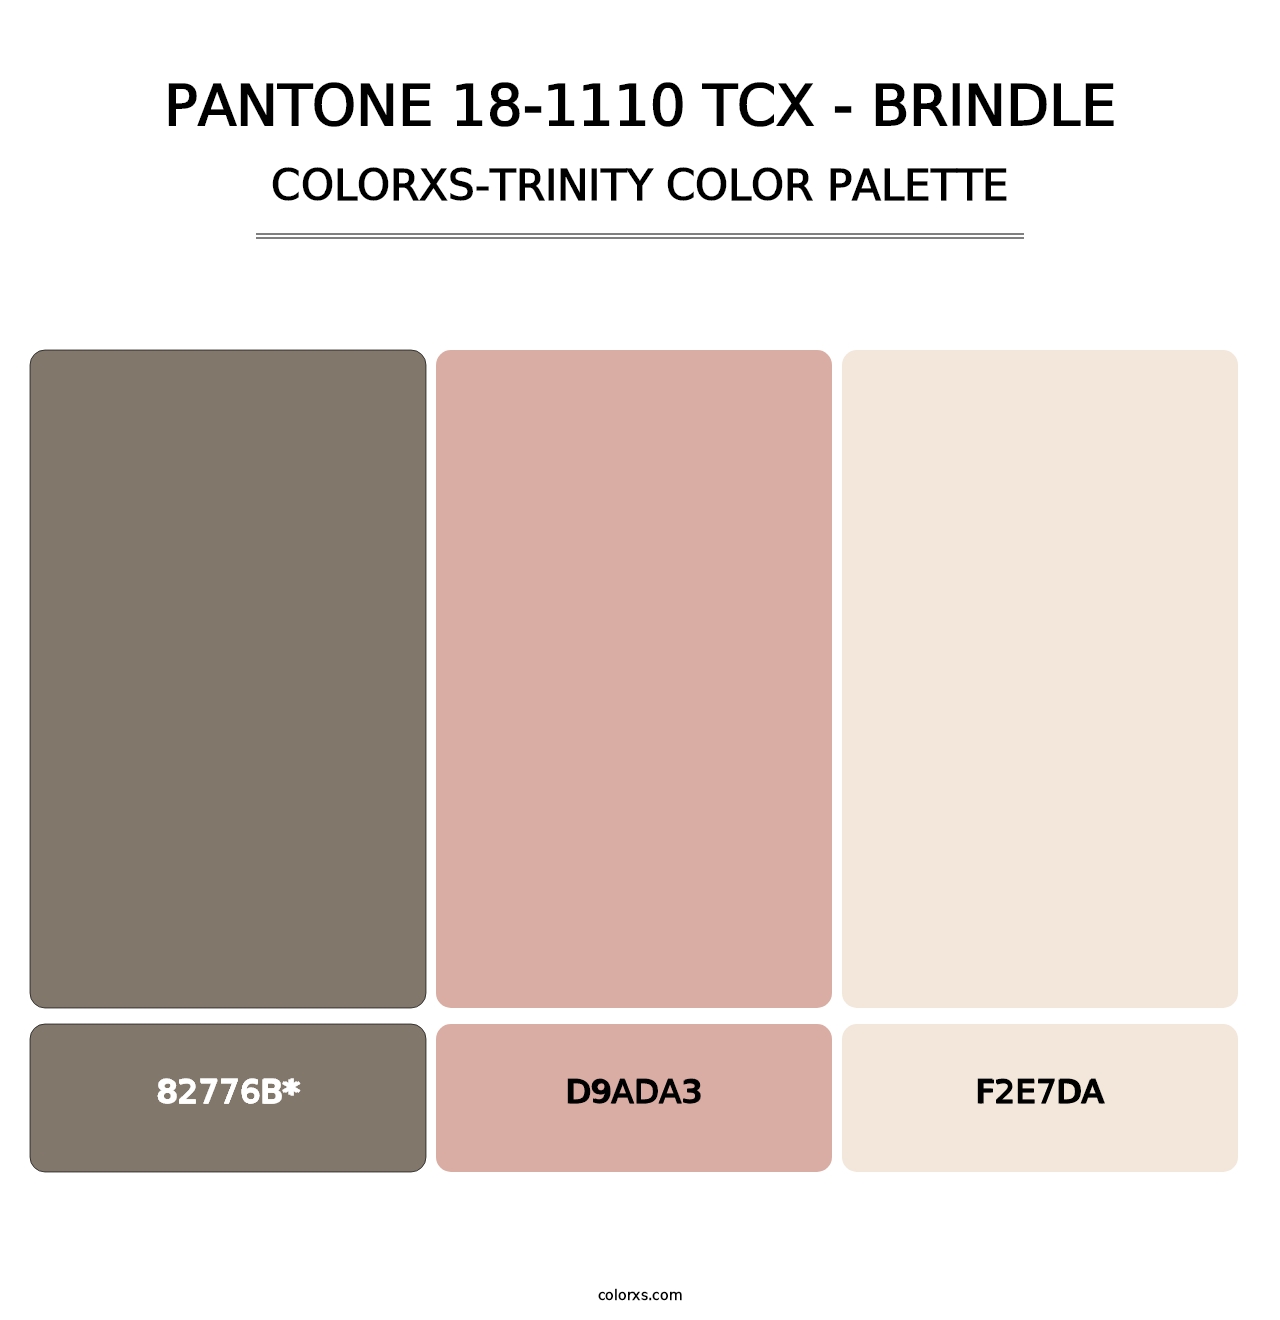 PANTONE 18-1110 TCX - Brindle - Colorxs Trinity Palette